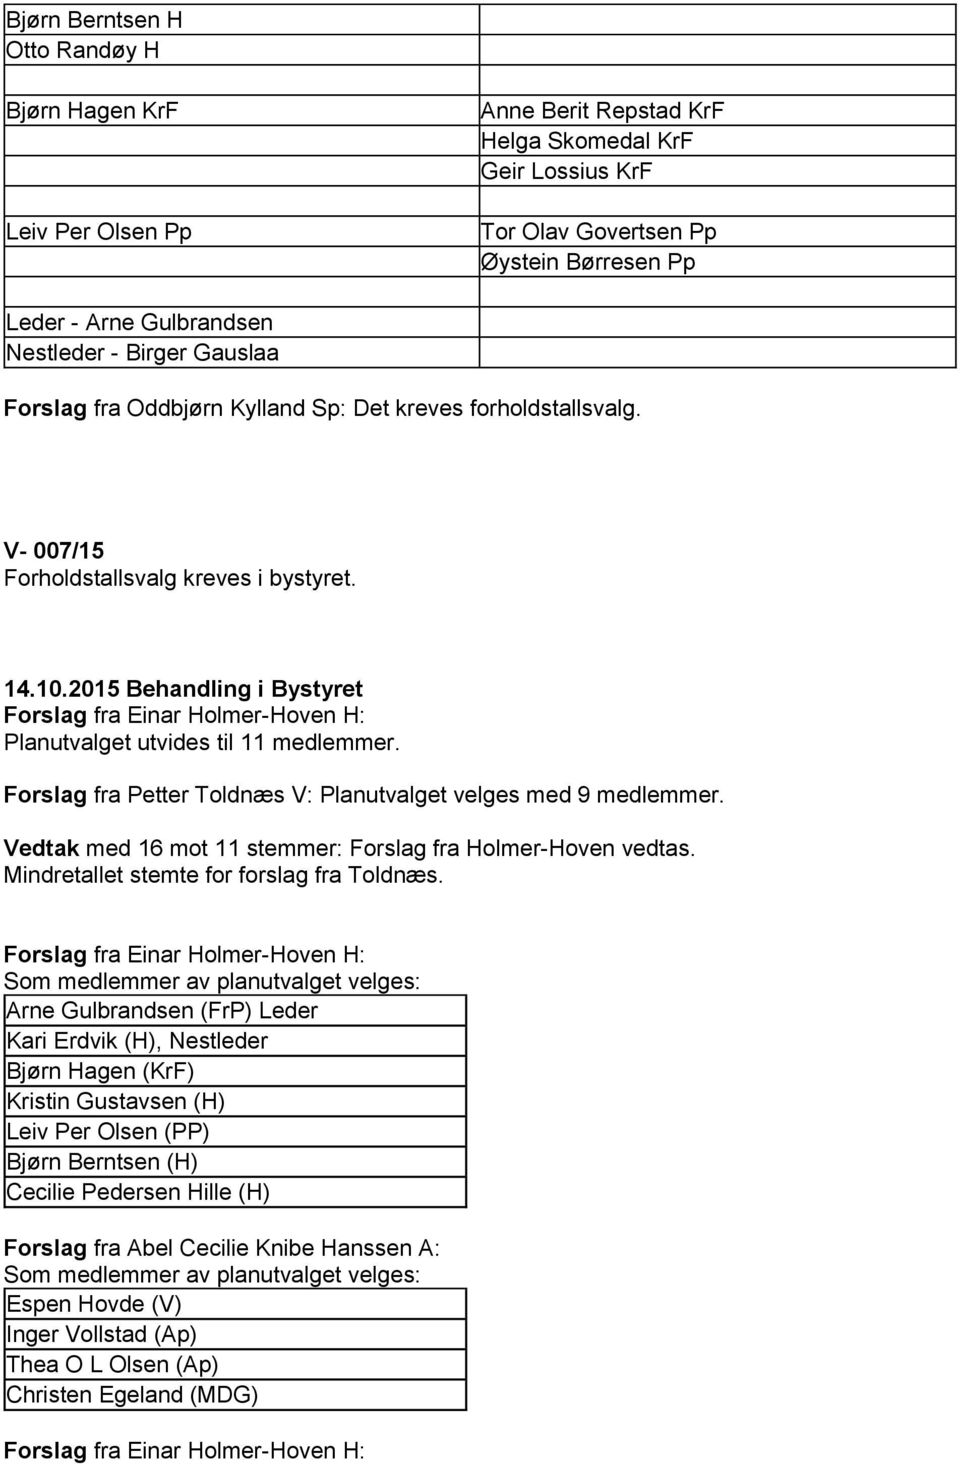 Forslag fra Petter Toldnæs V: Planutvalget velges med 9 medlemmer. Vedtak med 16 mot 11 stemmer: Forslag fra Holmer-Hoven vedtas. Mindretallet stemte for forslag fra Toldnæs.